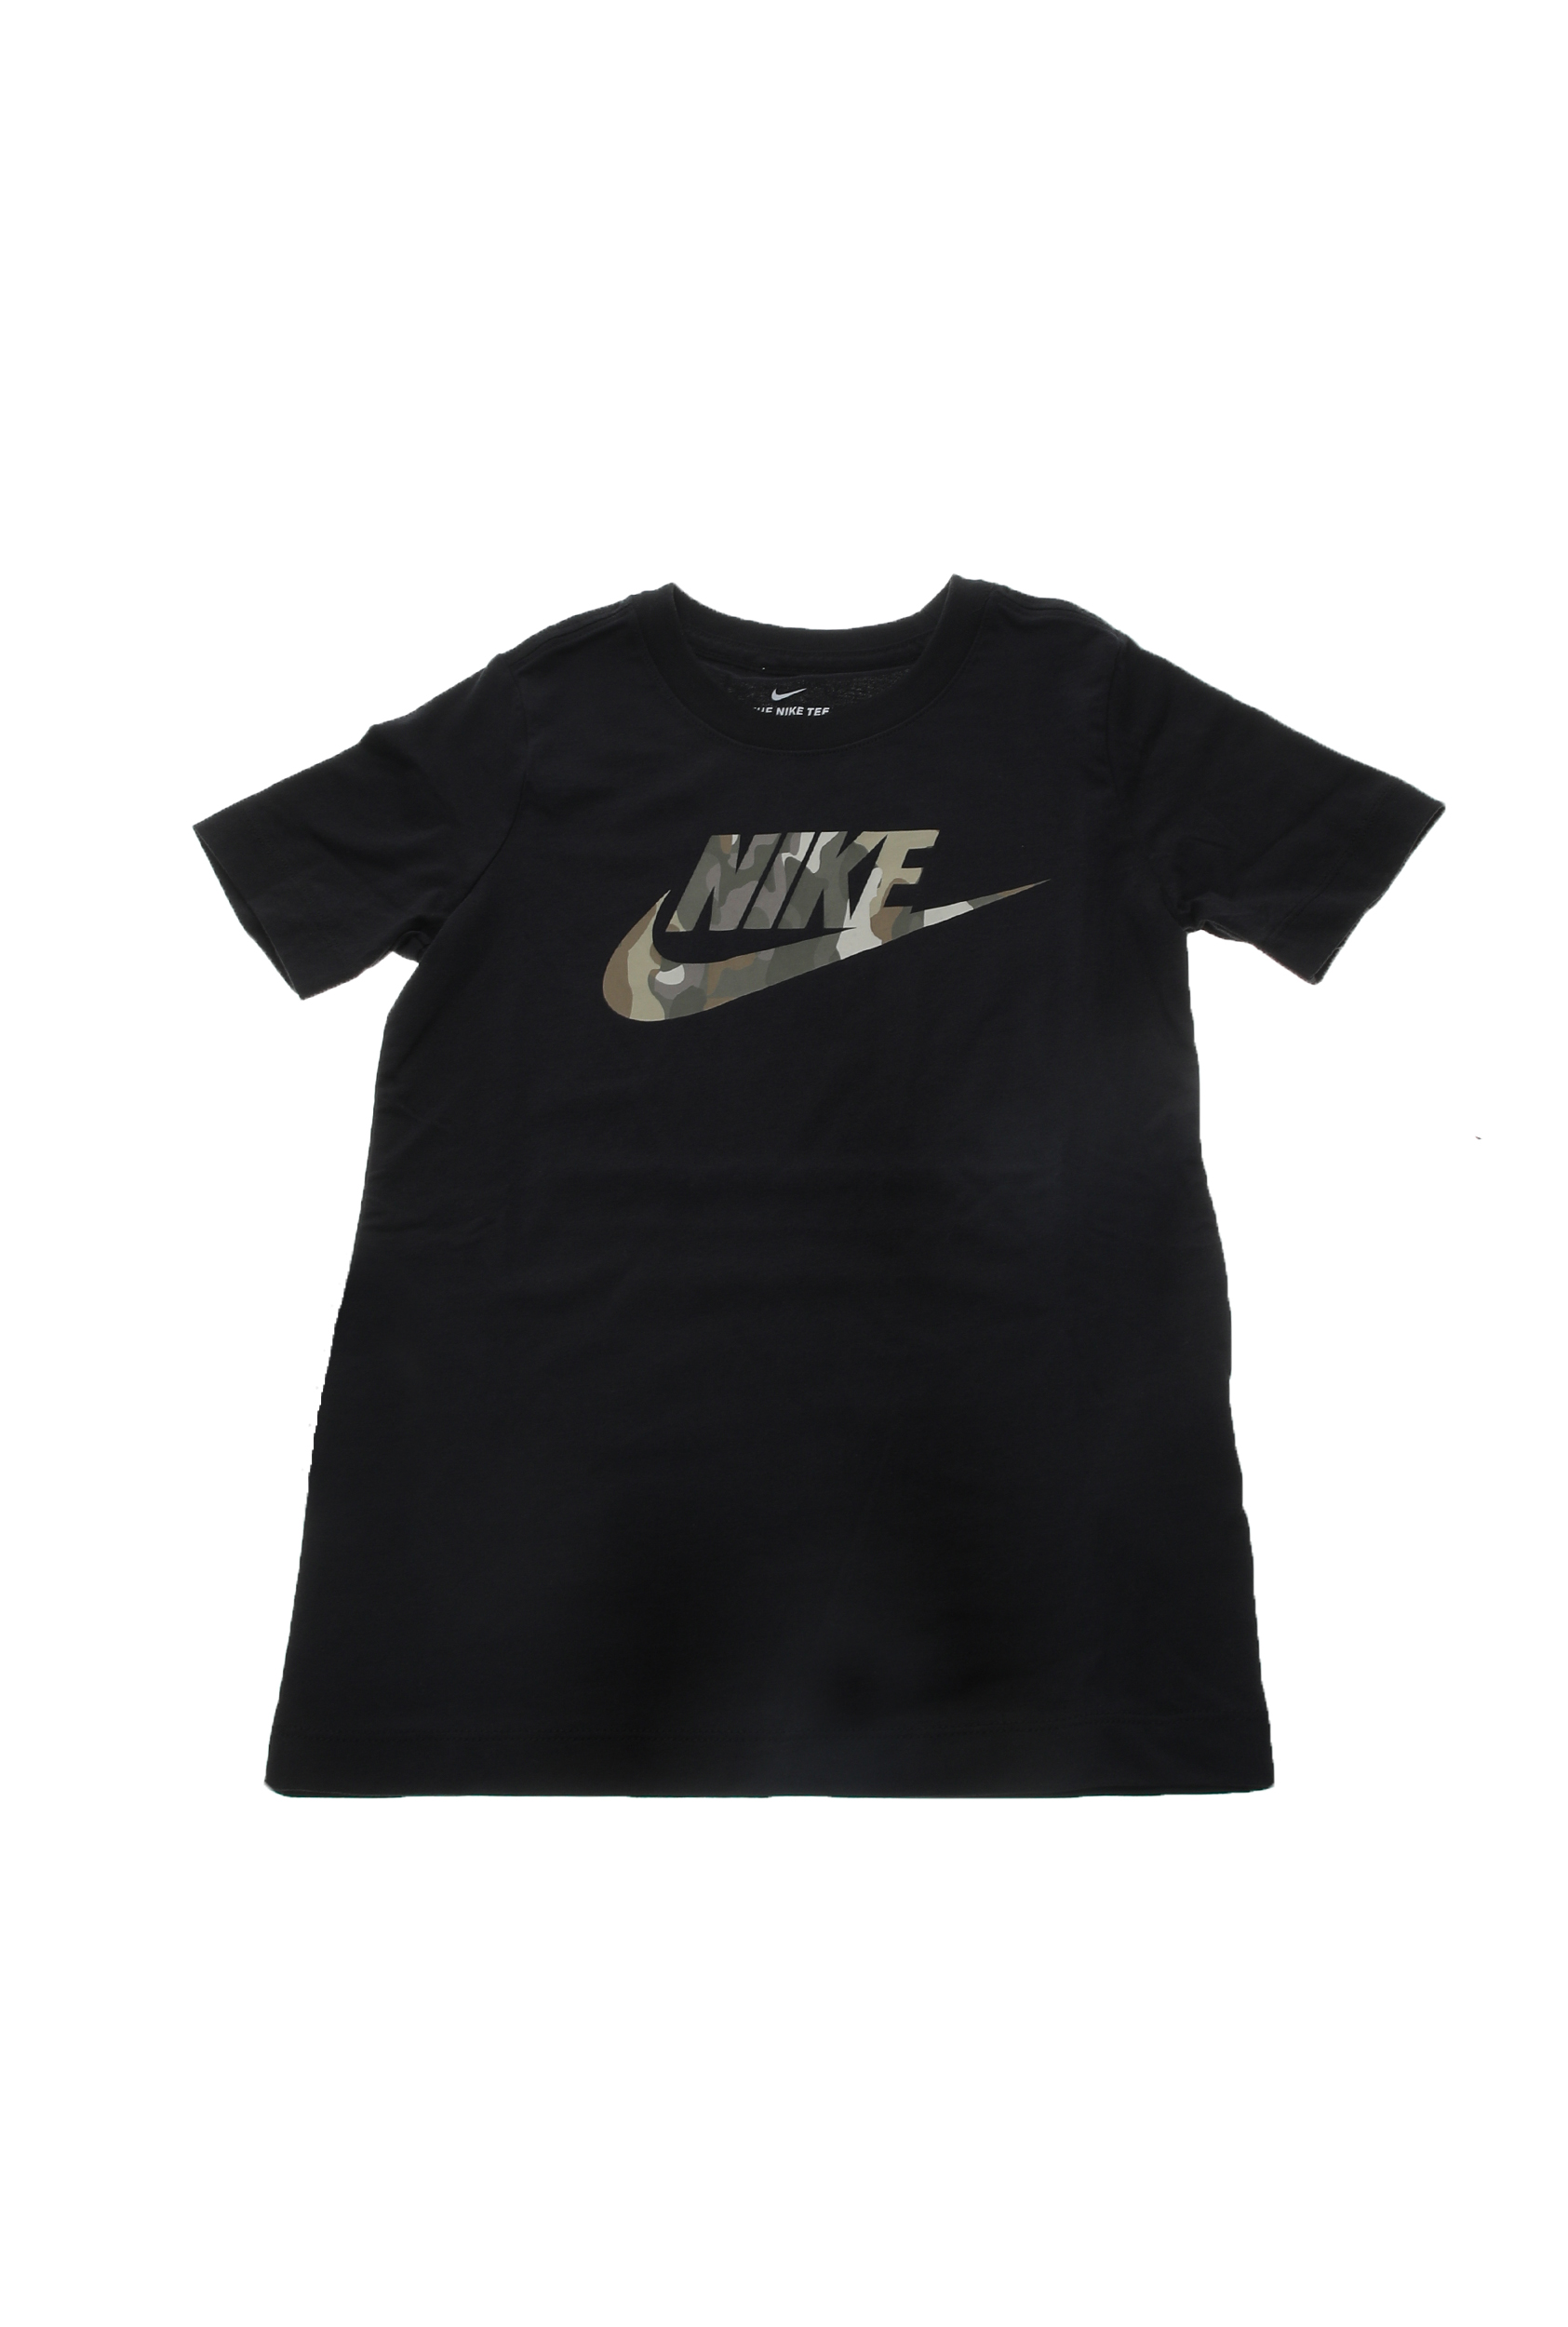 Παιδικά/Boys/Ρούχα/Αθλητικά NIKE - Παιδική κοντομάνικη μπλούζα NIKE TEE FUTURA CAMO μαύρη